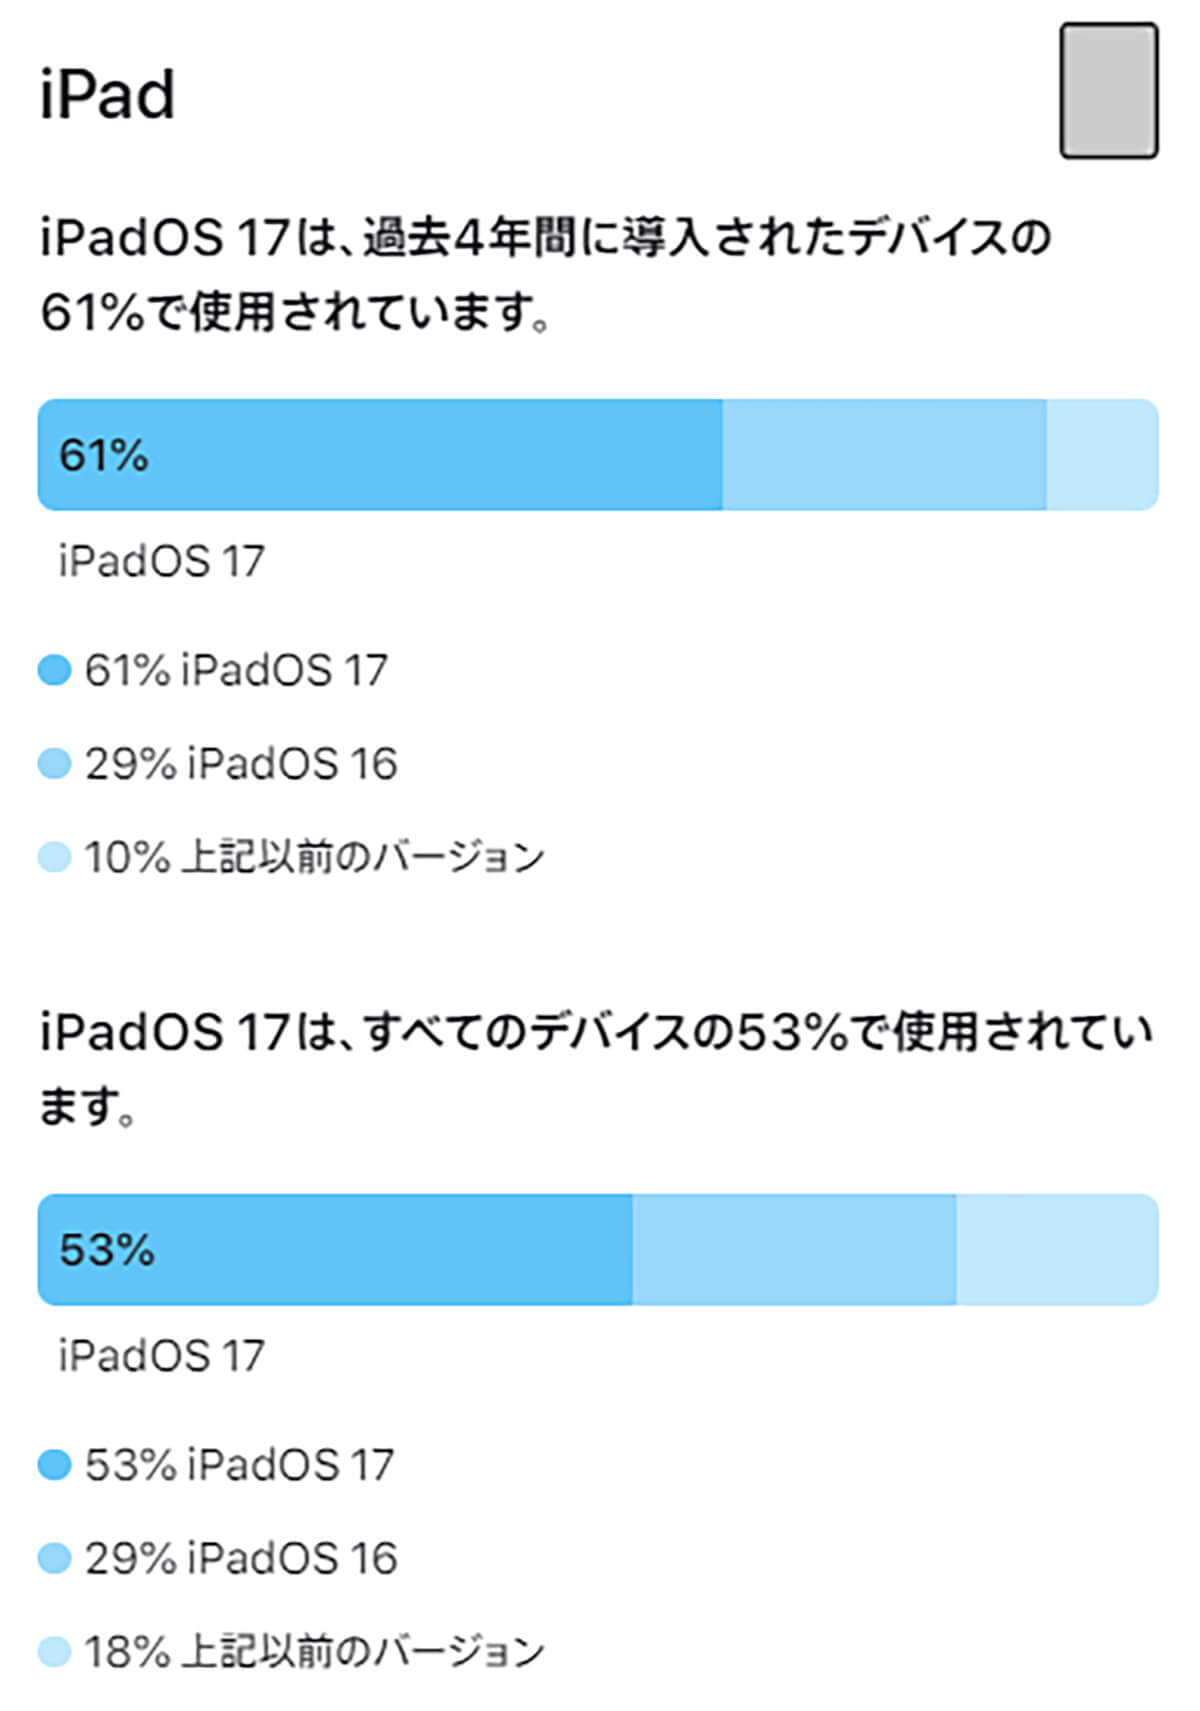 iPadOS 17利用状況